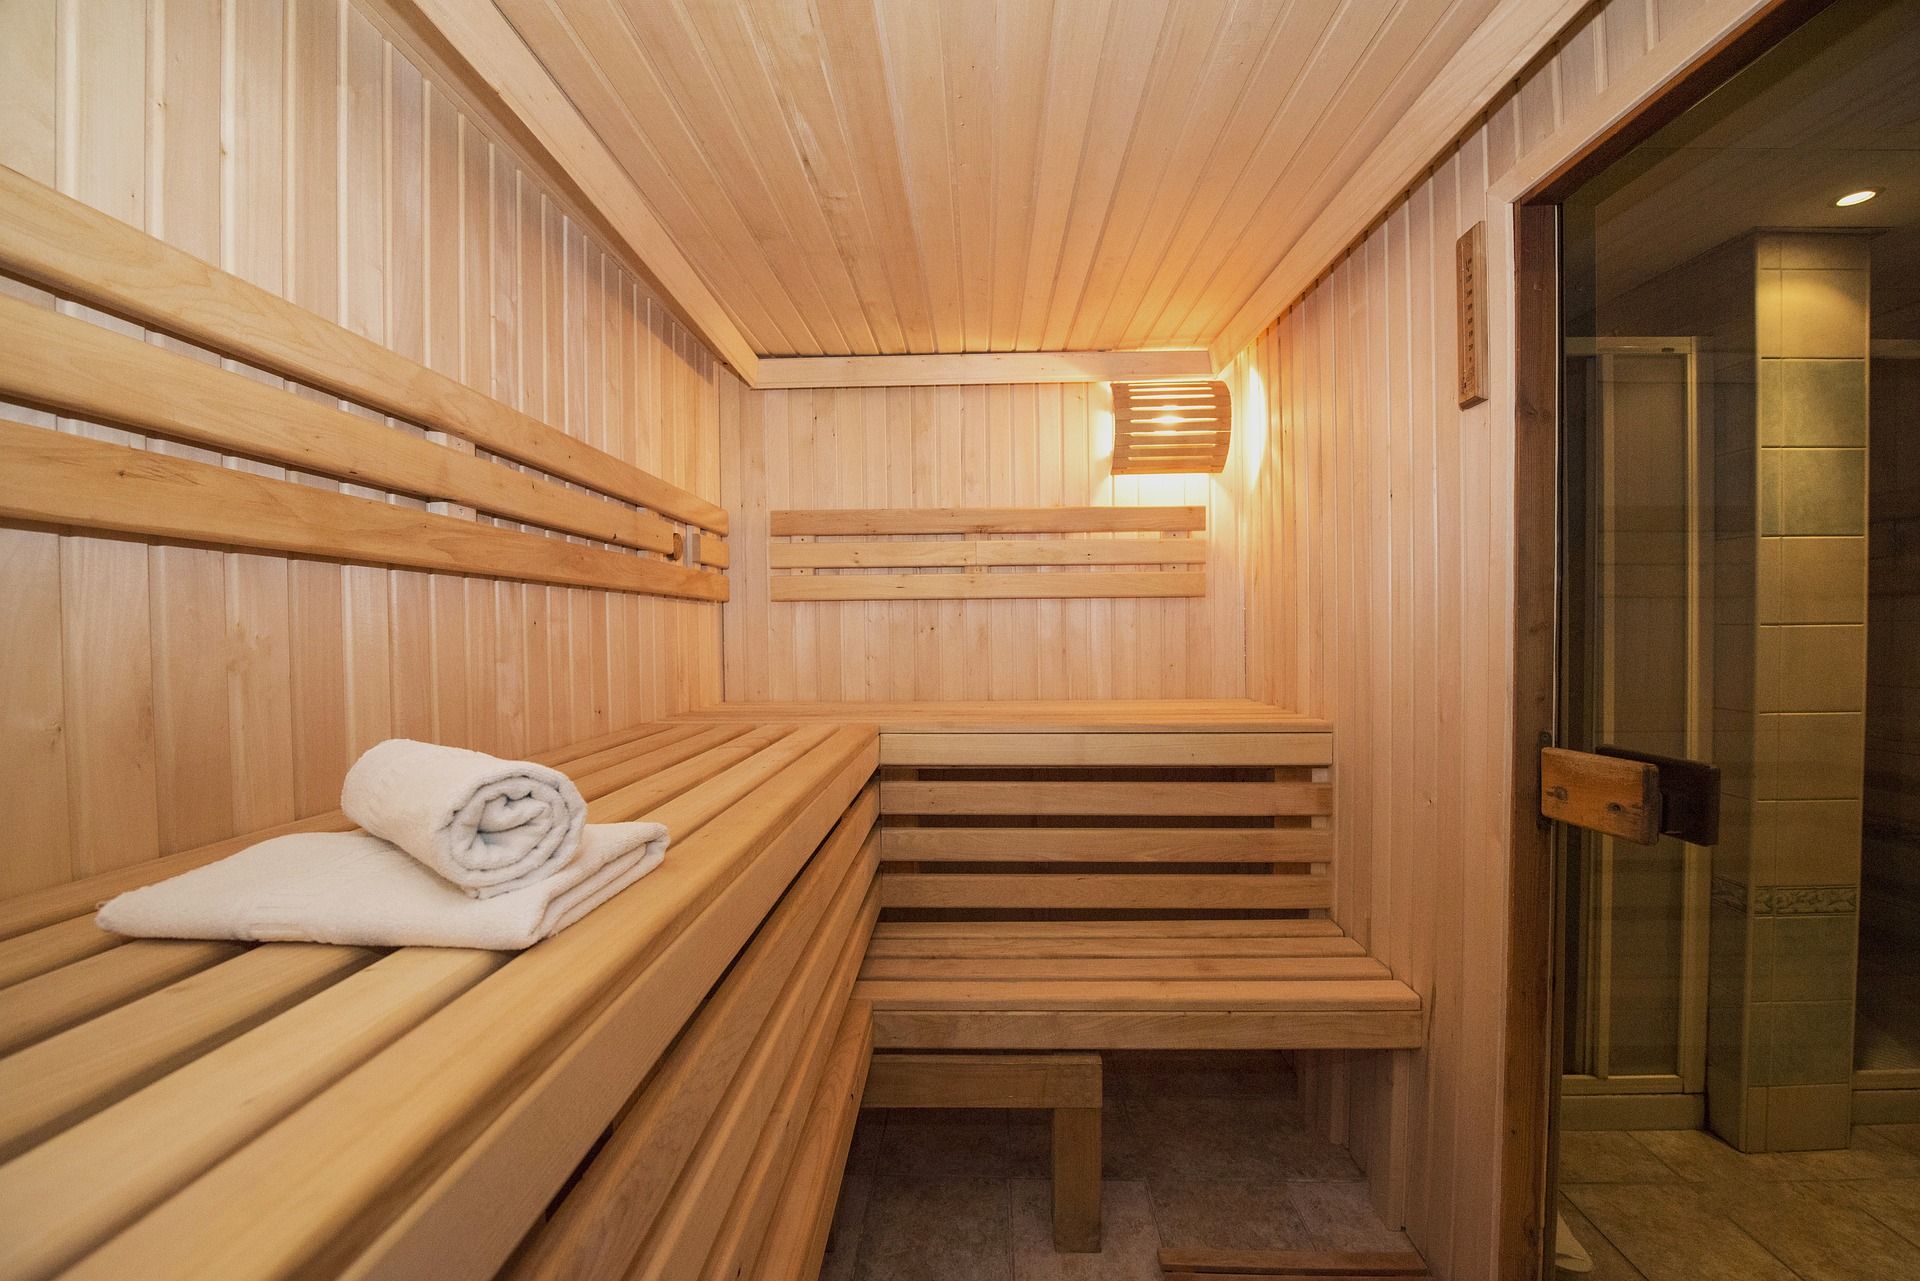 Erleben Sie die finnische Sauna-Kultur!